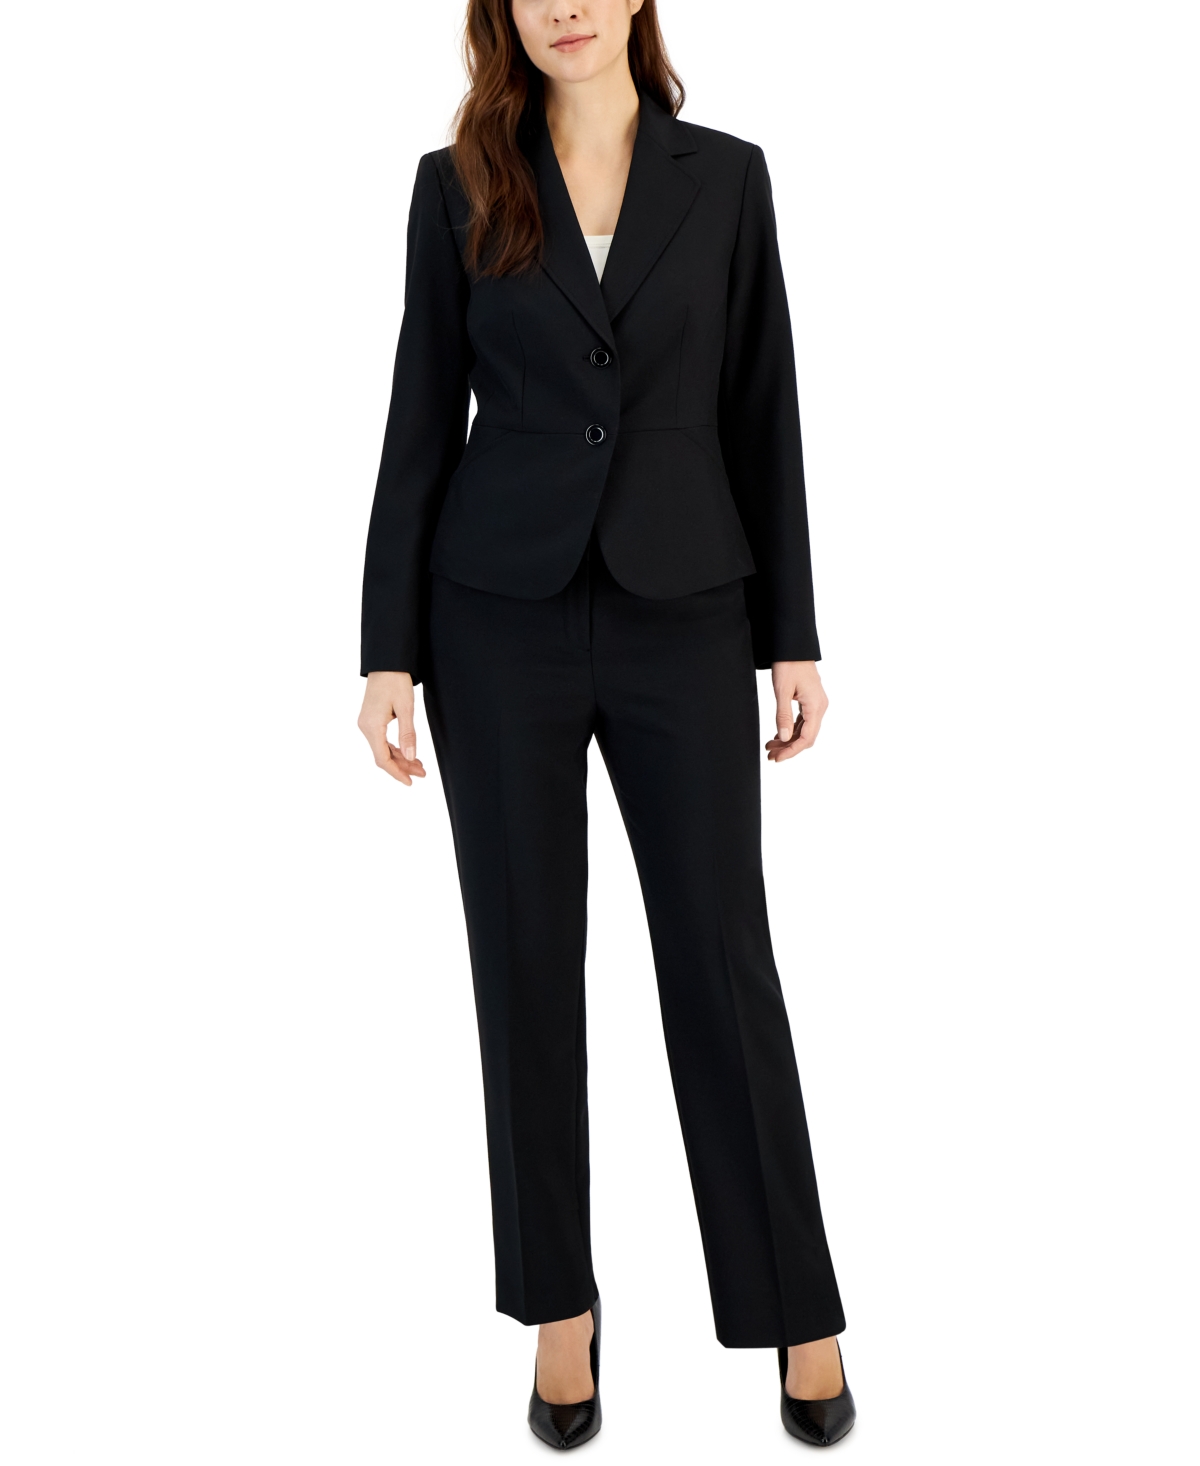 Women's Two-Button Blazer & Pants Suit, Regular & Petite - Black